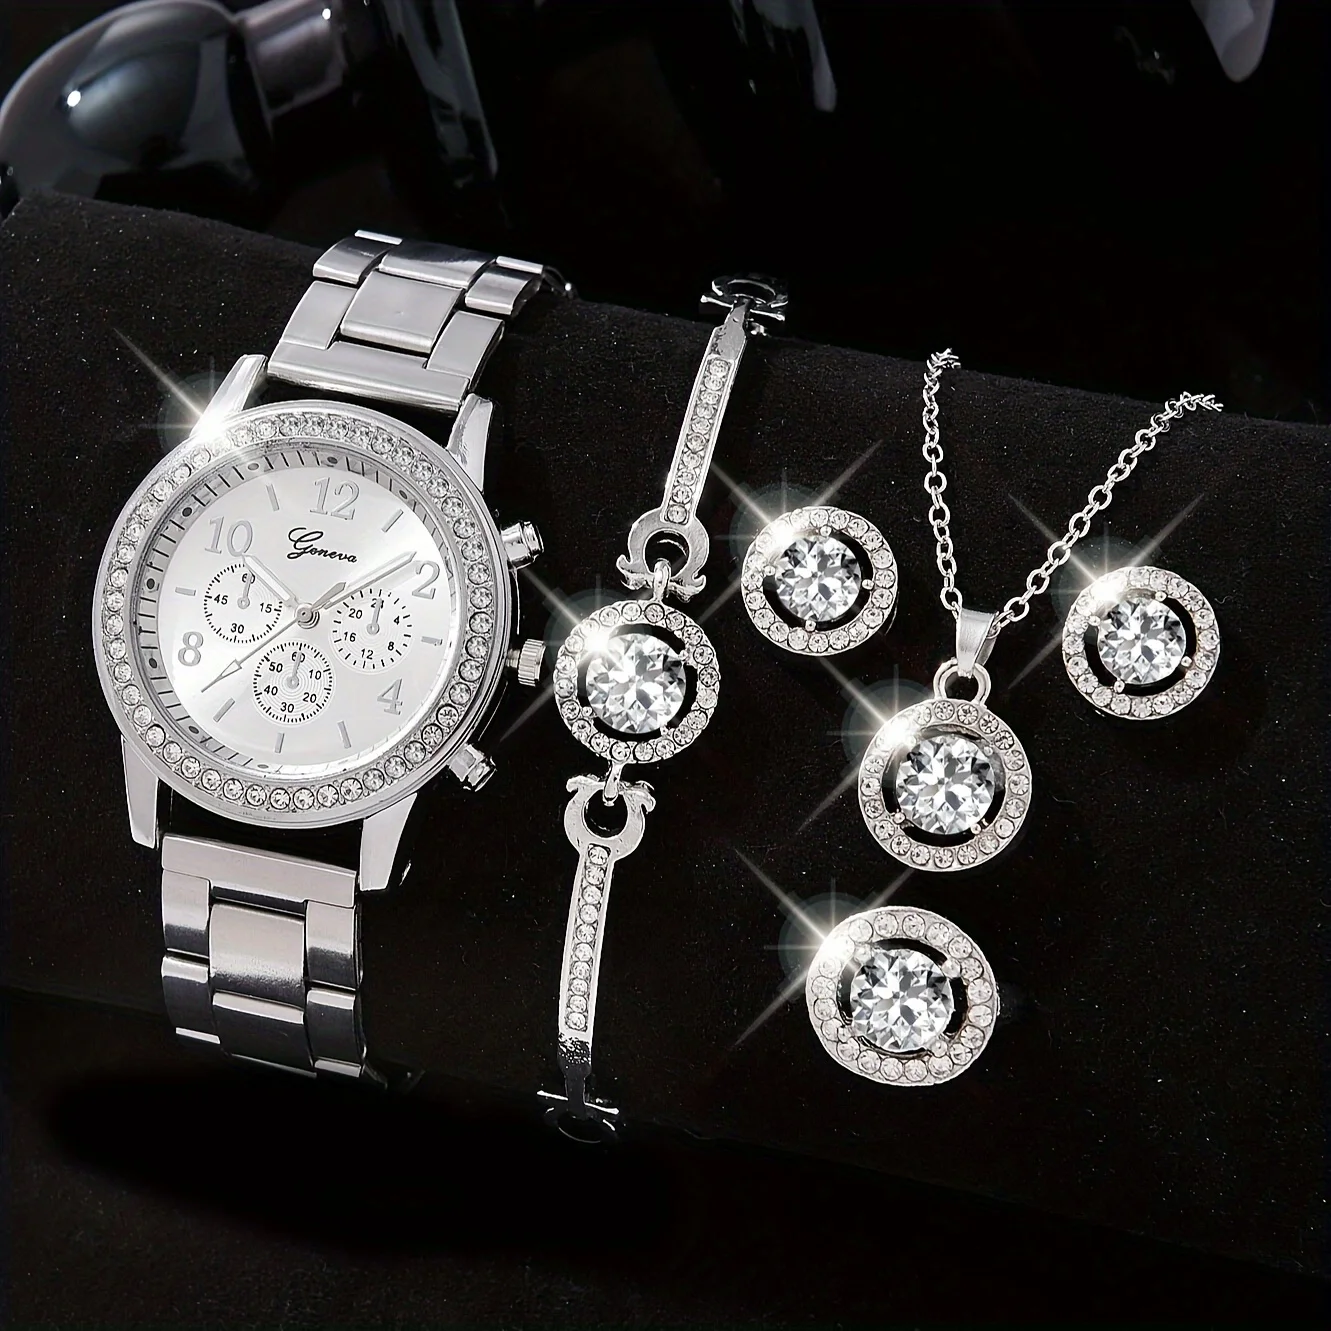 

6pcs/set Women's Watch Luxury Rhinestone Quartz Watch Shiny Fashion Analog Wrist Watch & Jewelry Set, Gift For Mom Her